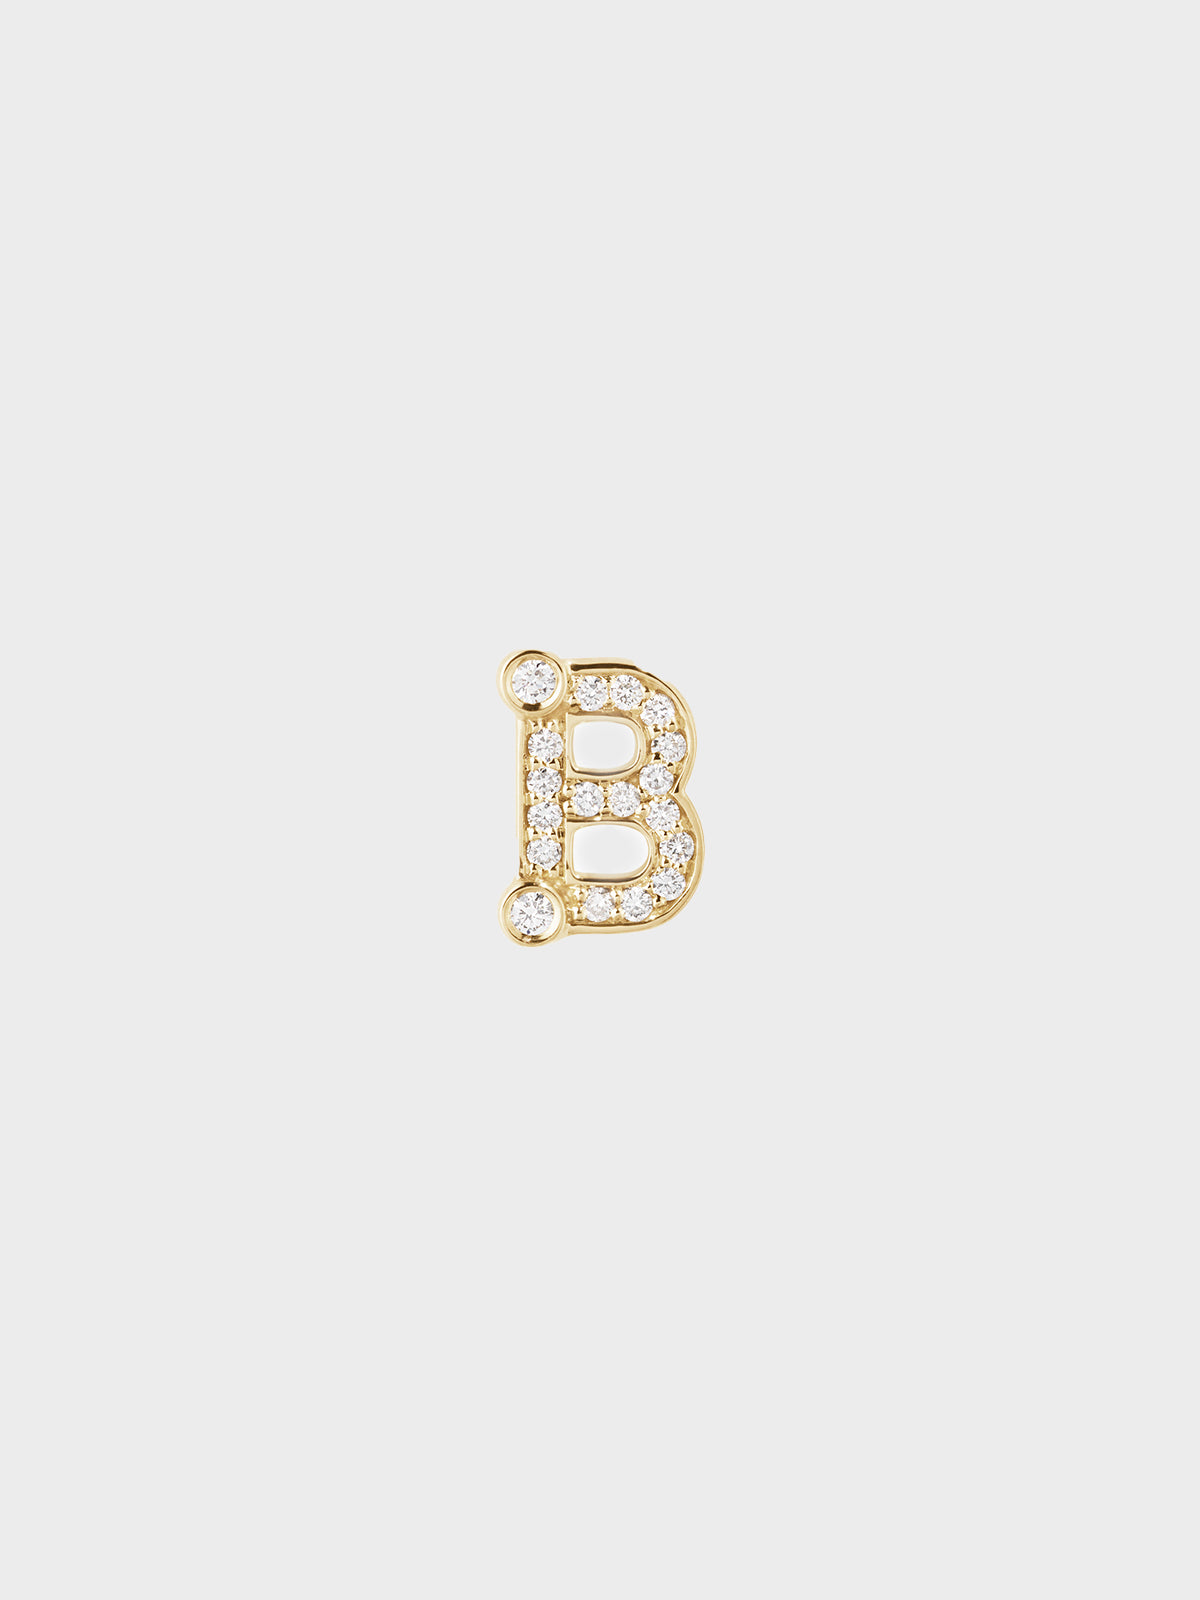 Sophie Bille Brahe - Petite B Earring in 18K Yellow Gold